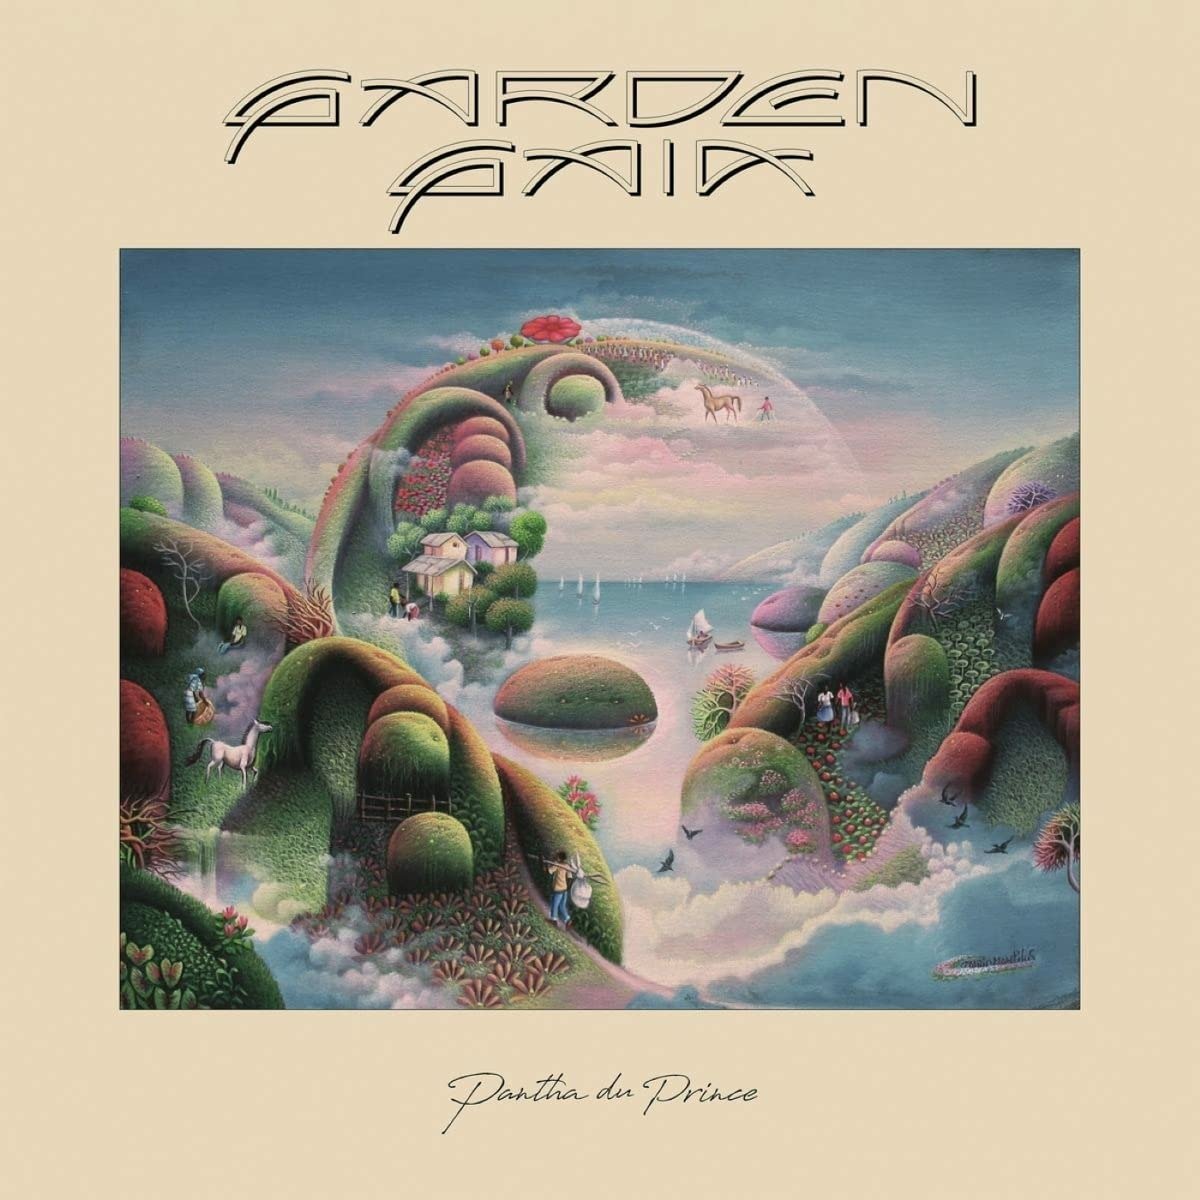 PANTHA DU PRINCE - GARDEN GAIA, Vinyl